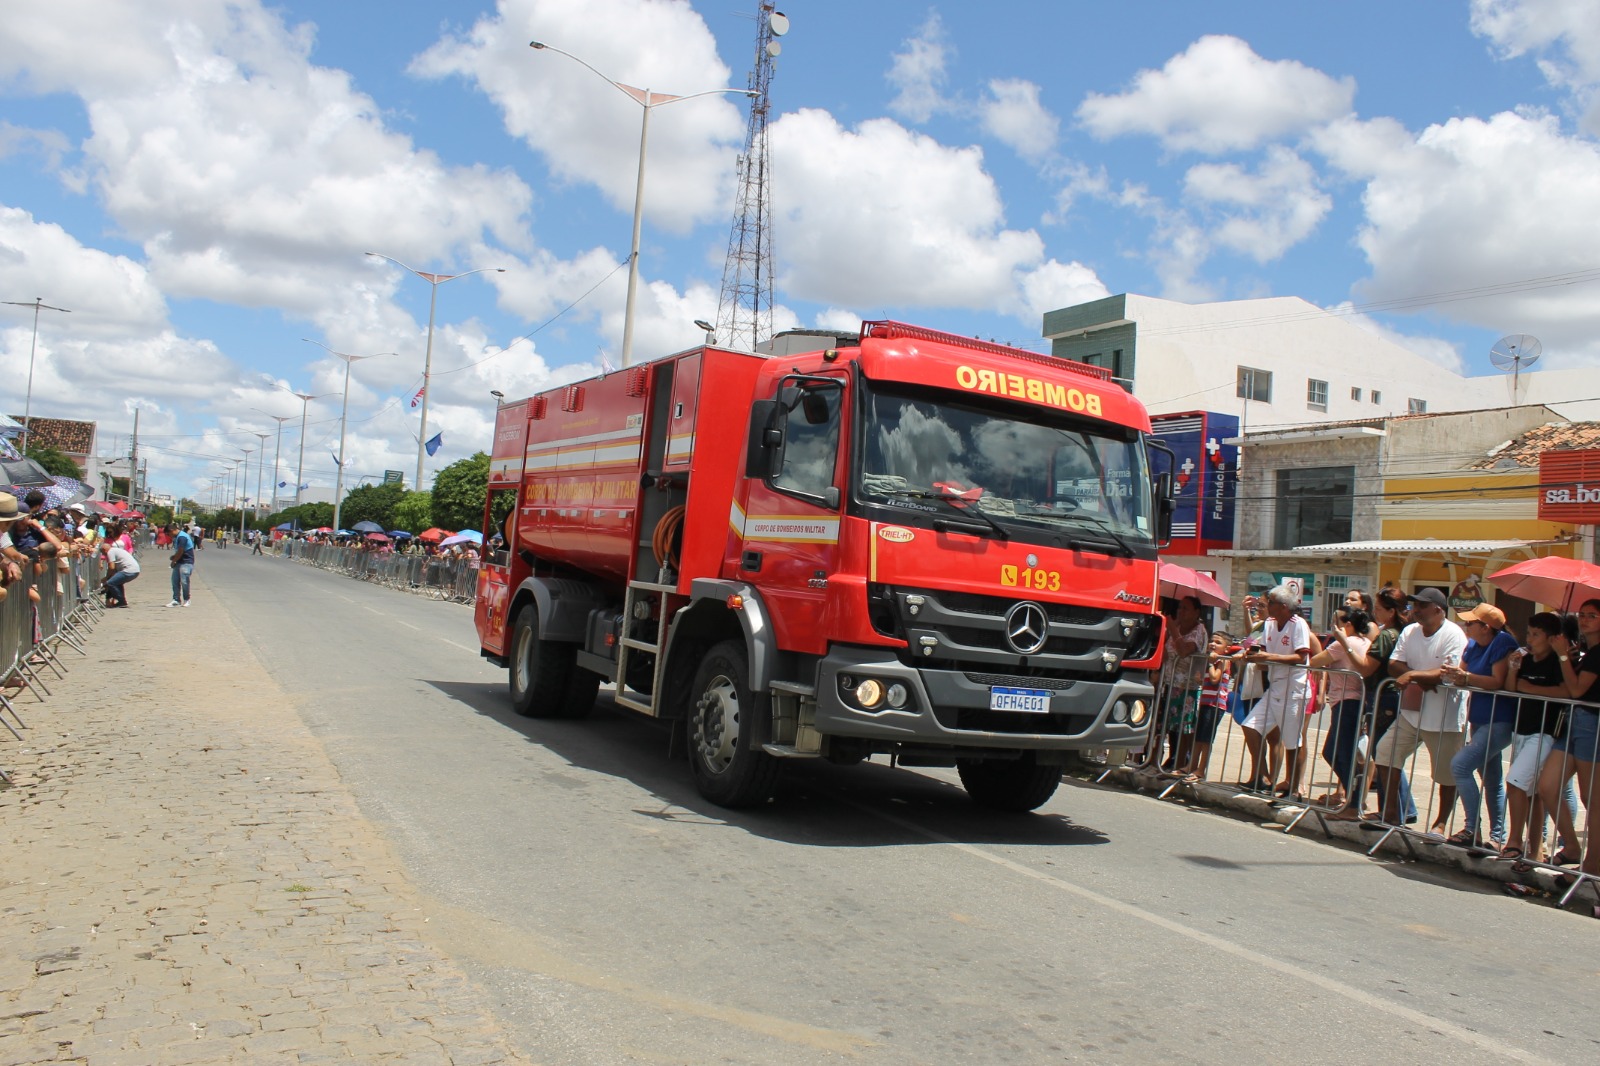 Desfiles-Civicos-em-Monteiro-acontecem-com-grande-presenca-de-publico-e-autoridades-34 Desfiles Cívicos em Monteiro acontecem com grande presença de público e autoridades